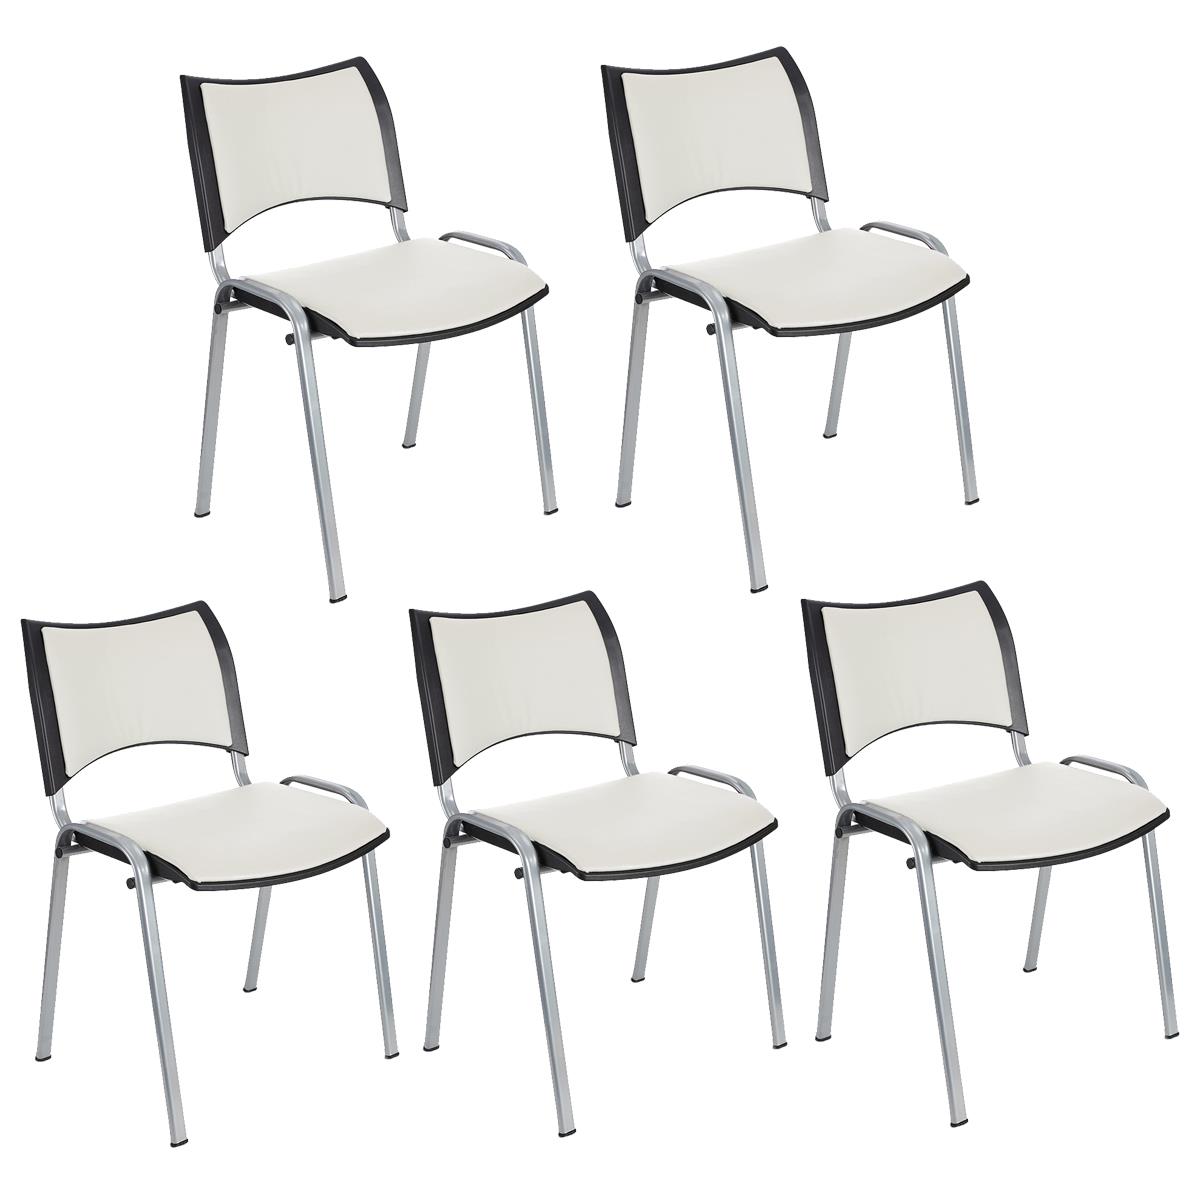 Lote 5 Cadeiras de Visita ROMEL PELE, Prática e Empilhável, Pernas Cinza, Branco